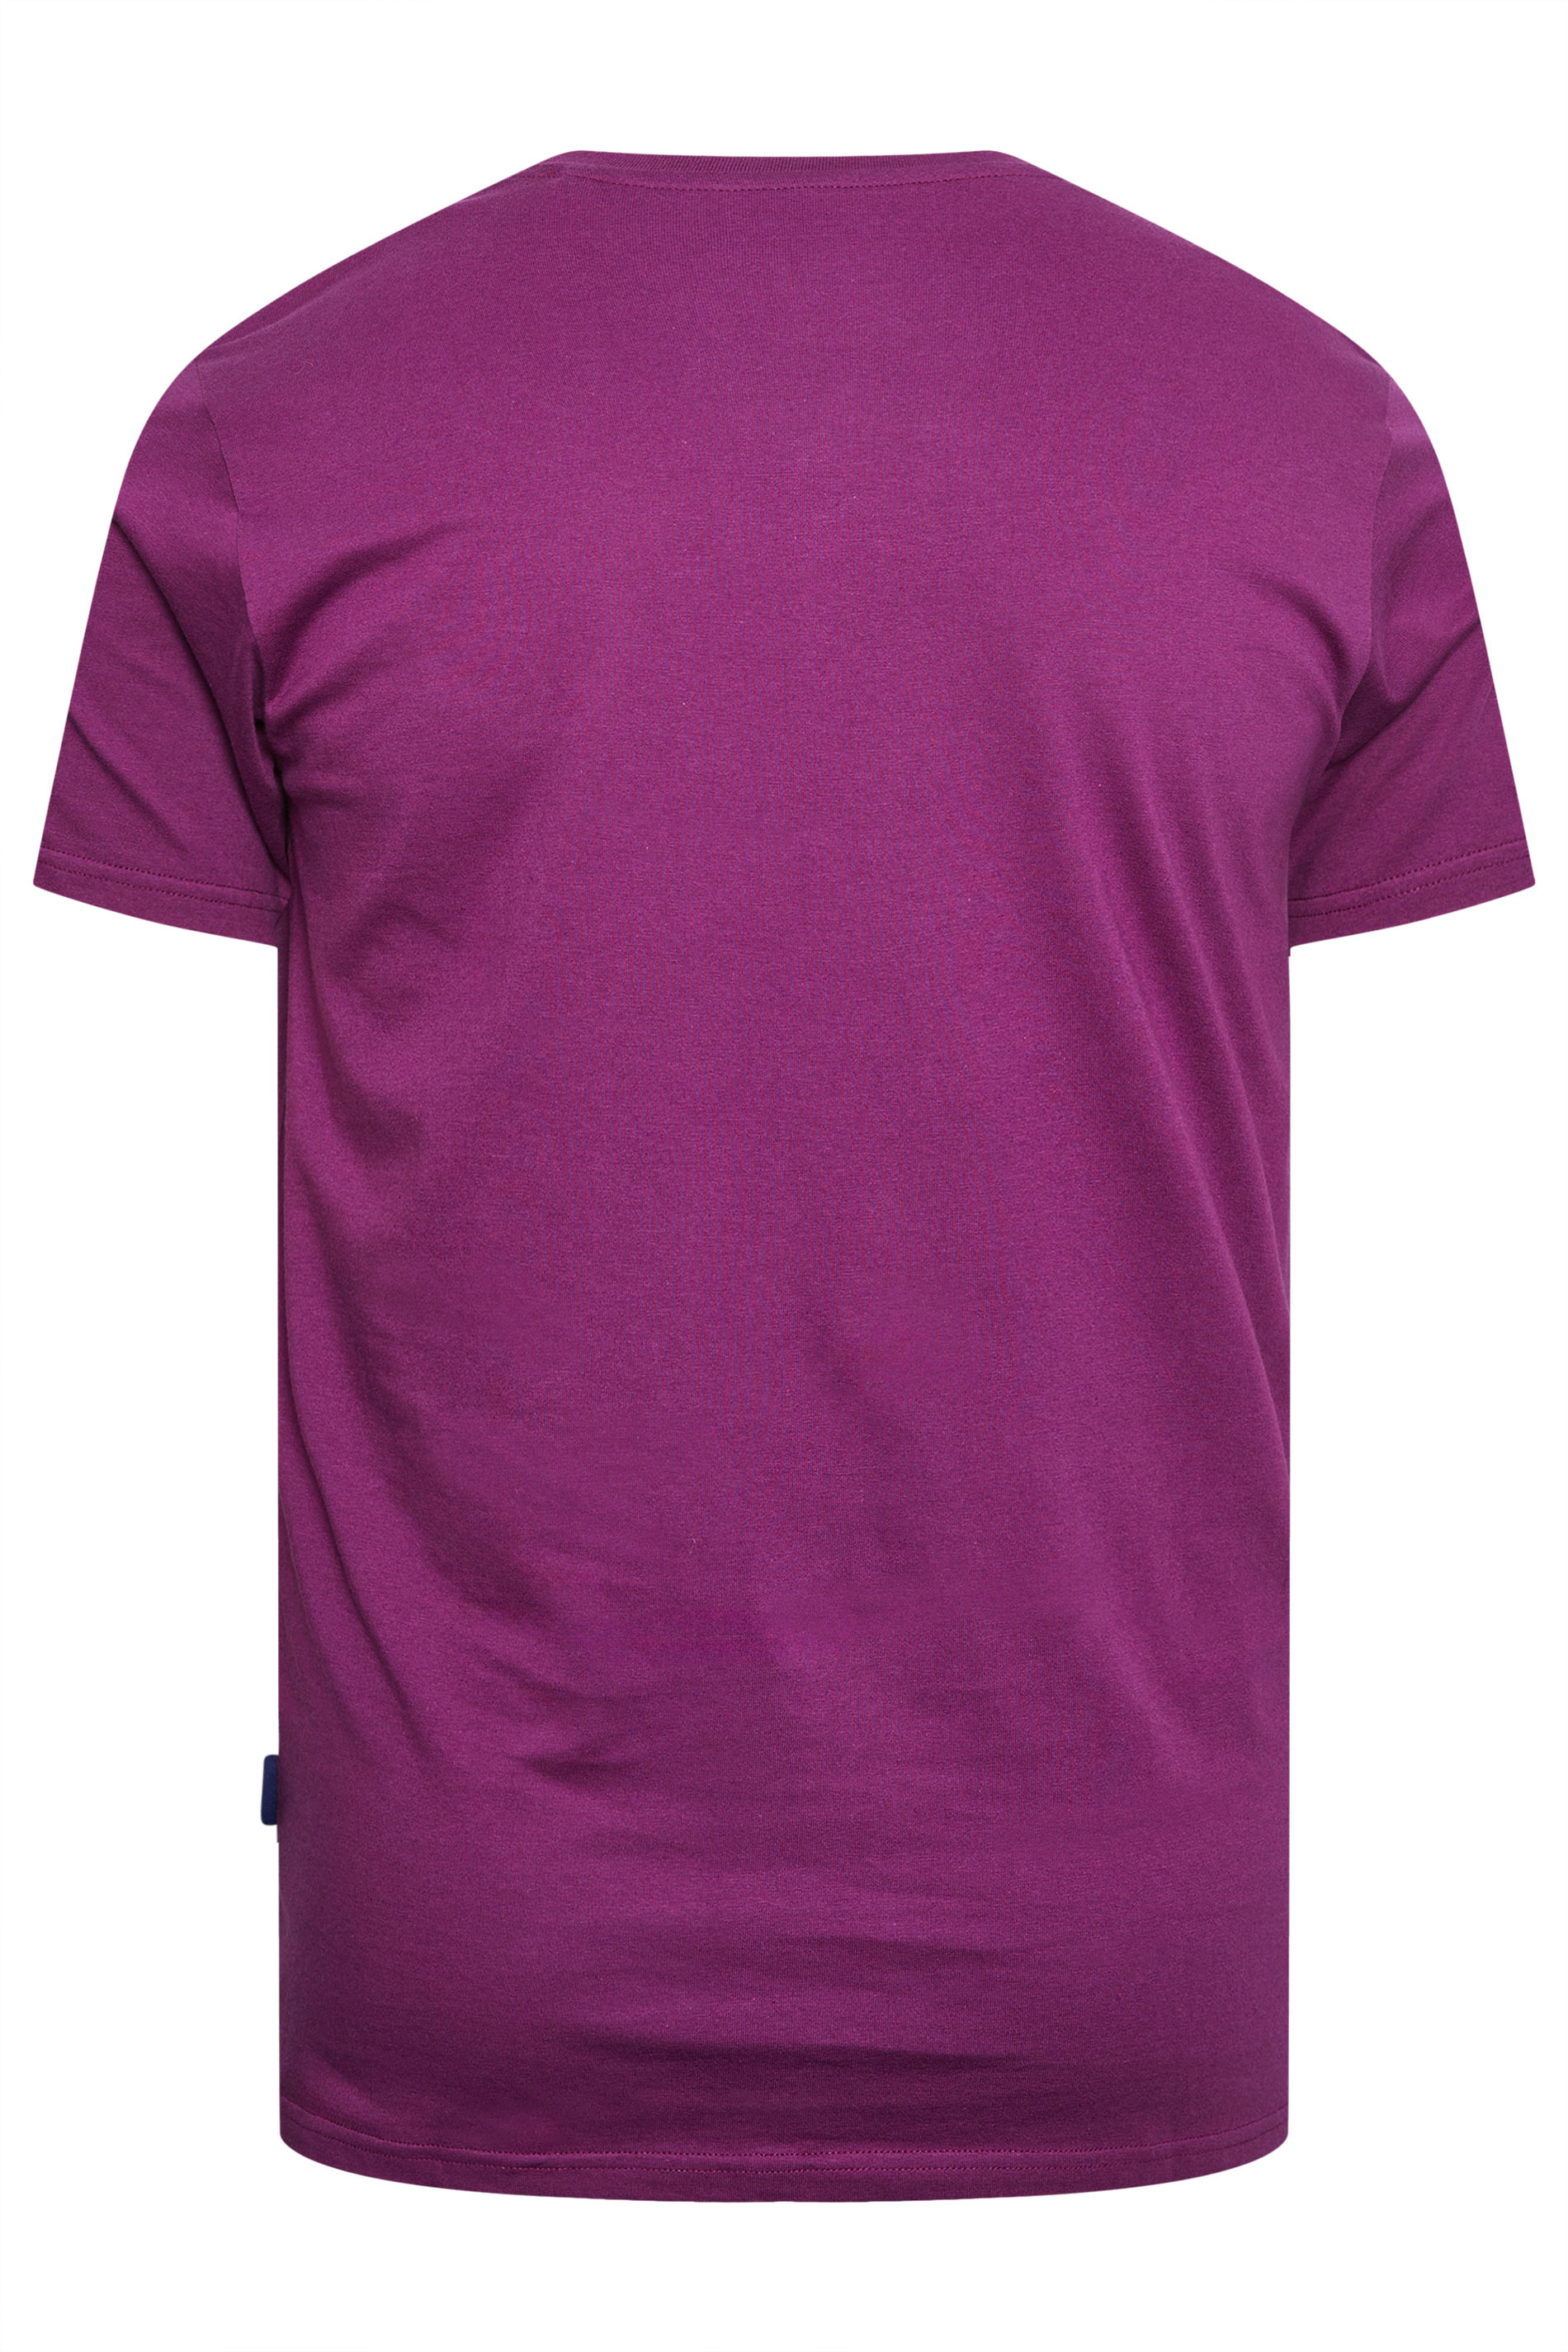 BadRhino Big & Tall Plum Purple Core T-Shirt | BadRhino 3